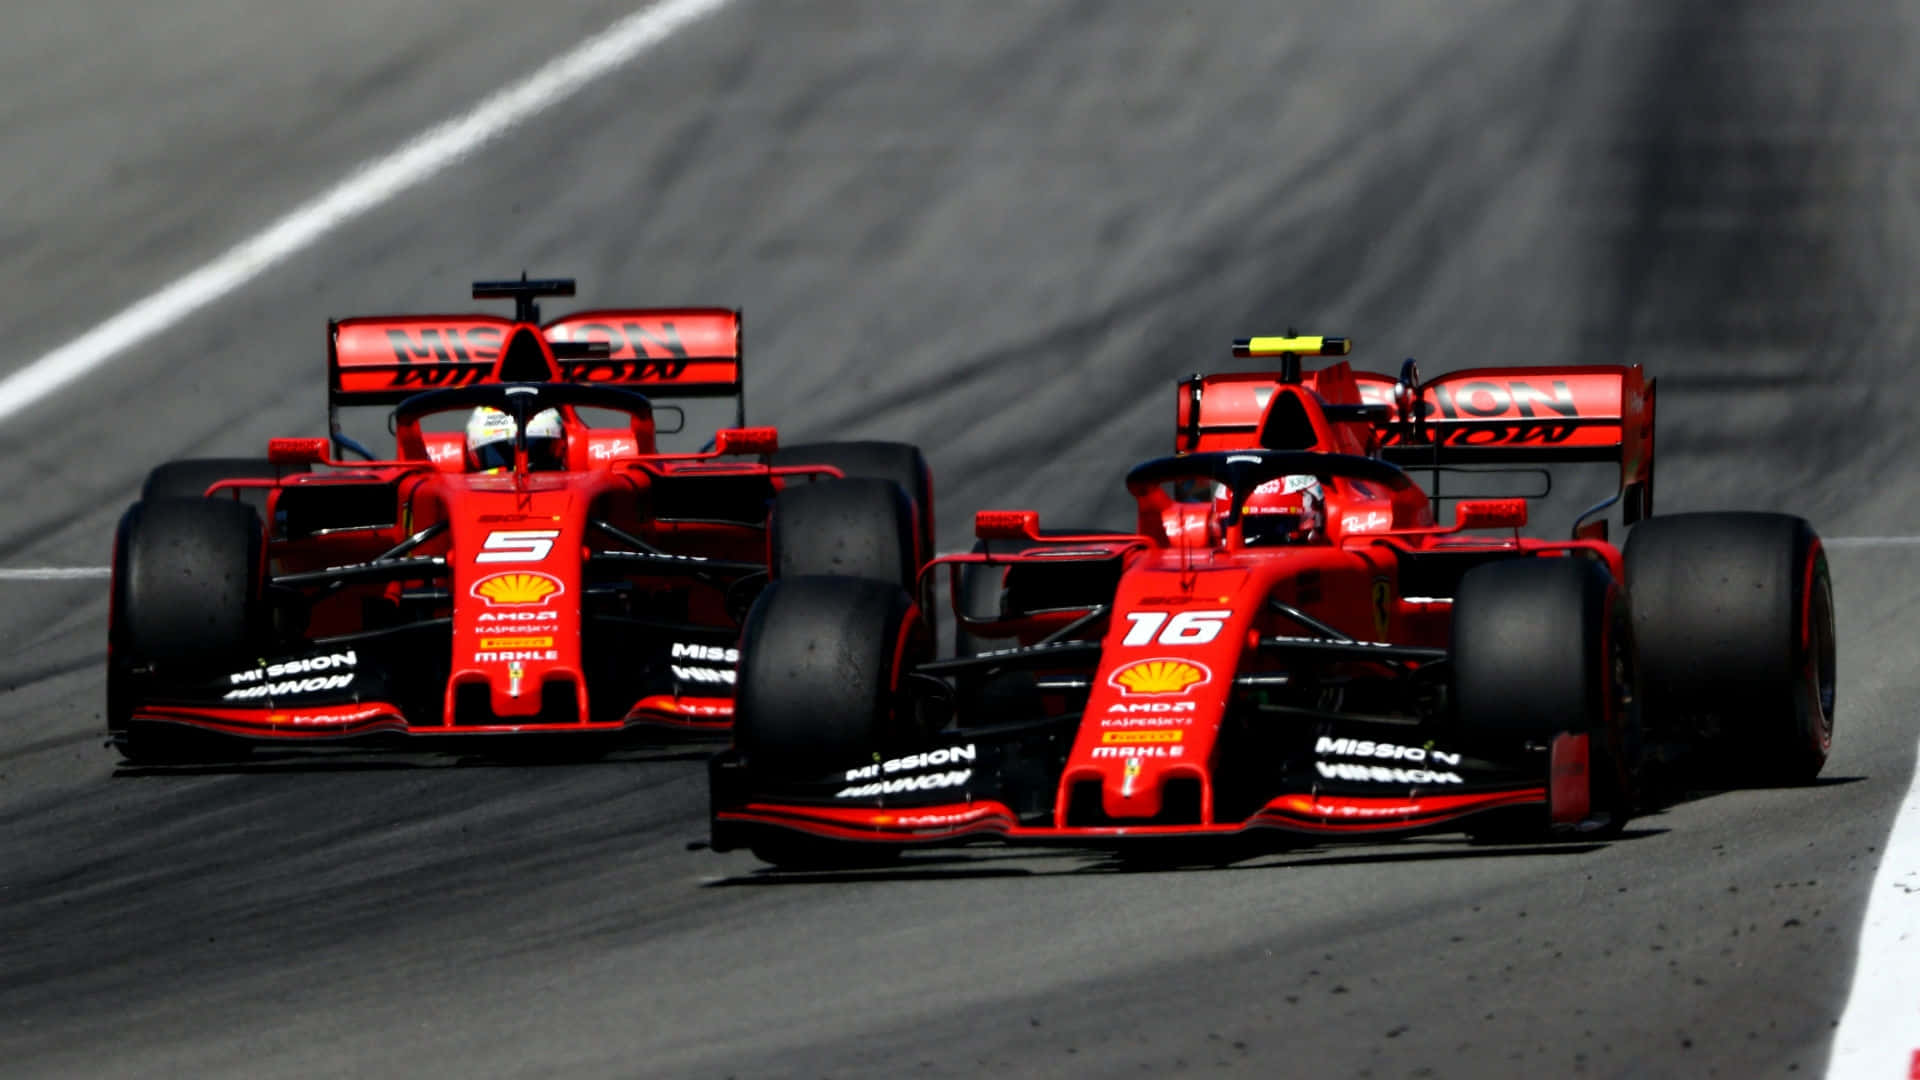 Dosfondos De Pantalla De Fórmula 1 2019 En Alta Definición Con El Logotipo De Shell En Rojo.